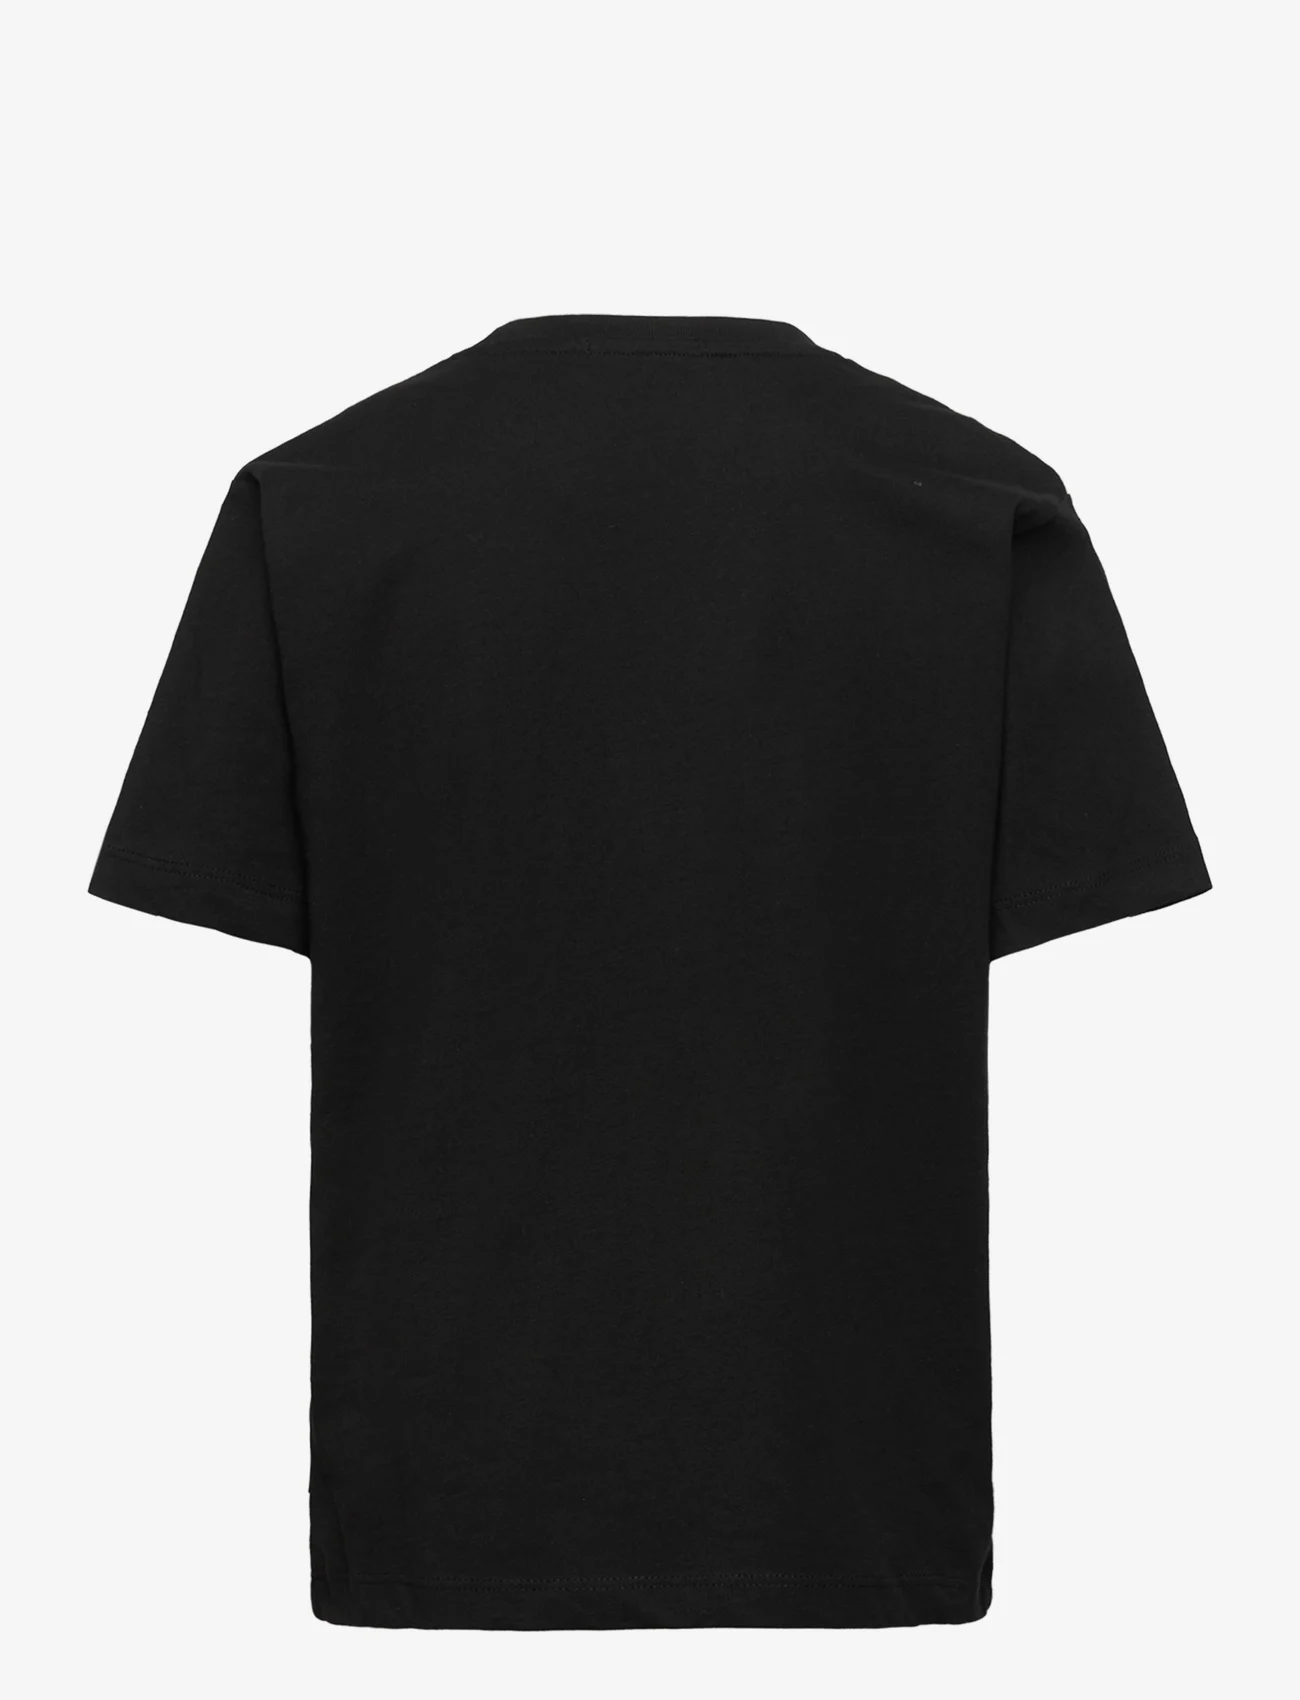 Tom Tailor - regular printed t-shirt - lühikeste varrukatega t-särgid - black - 1